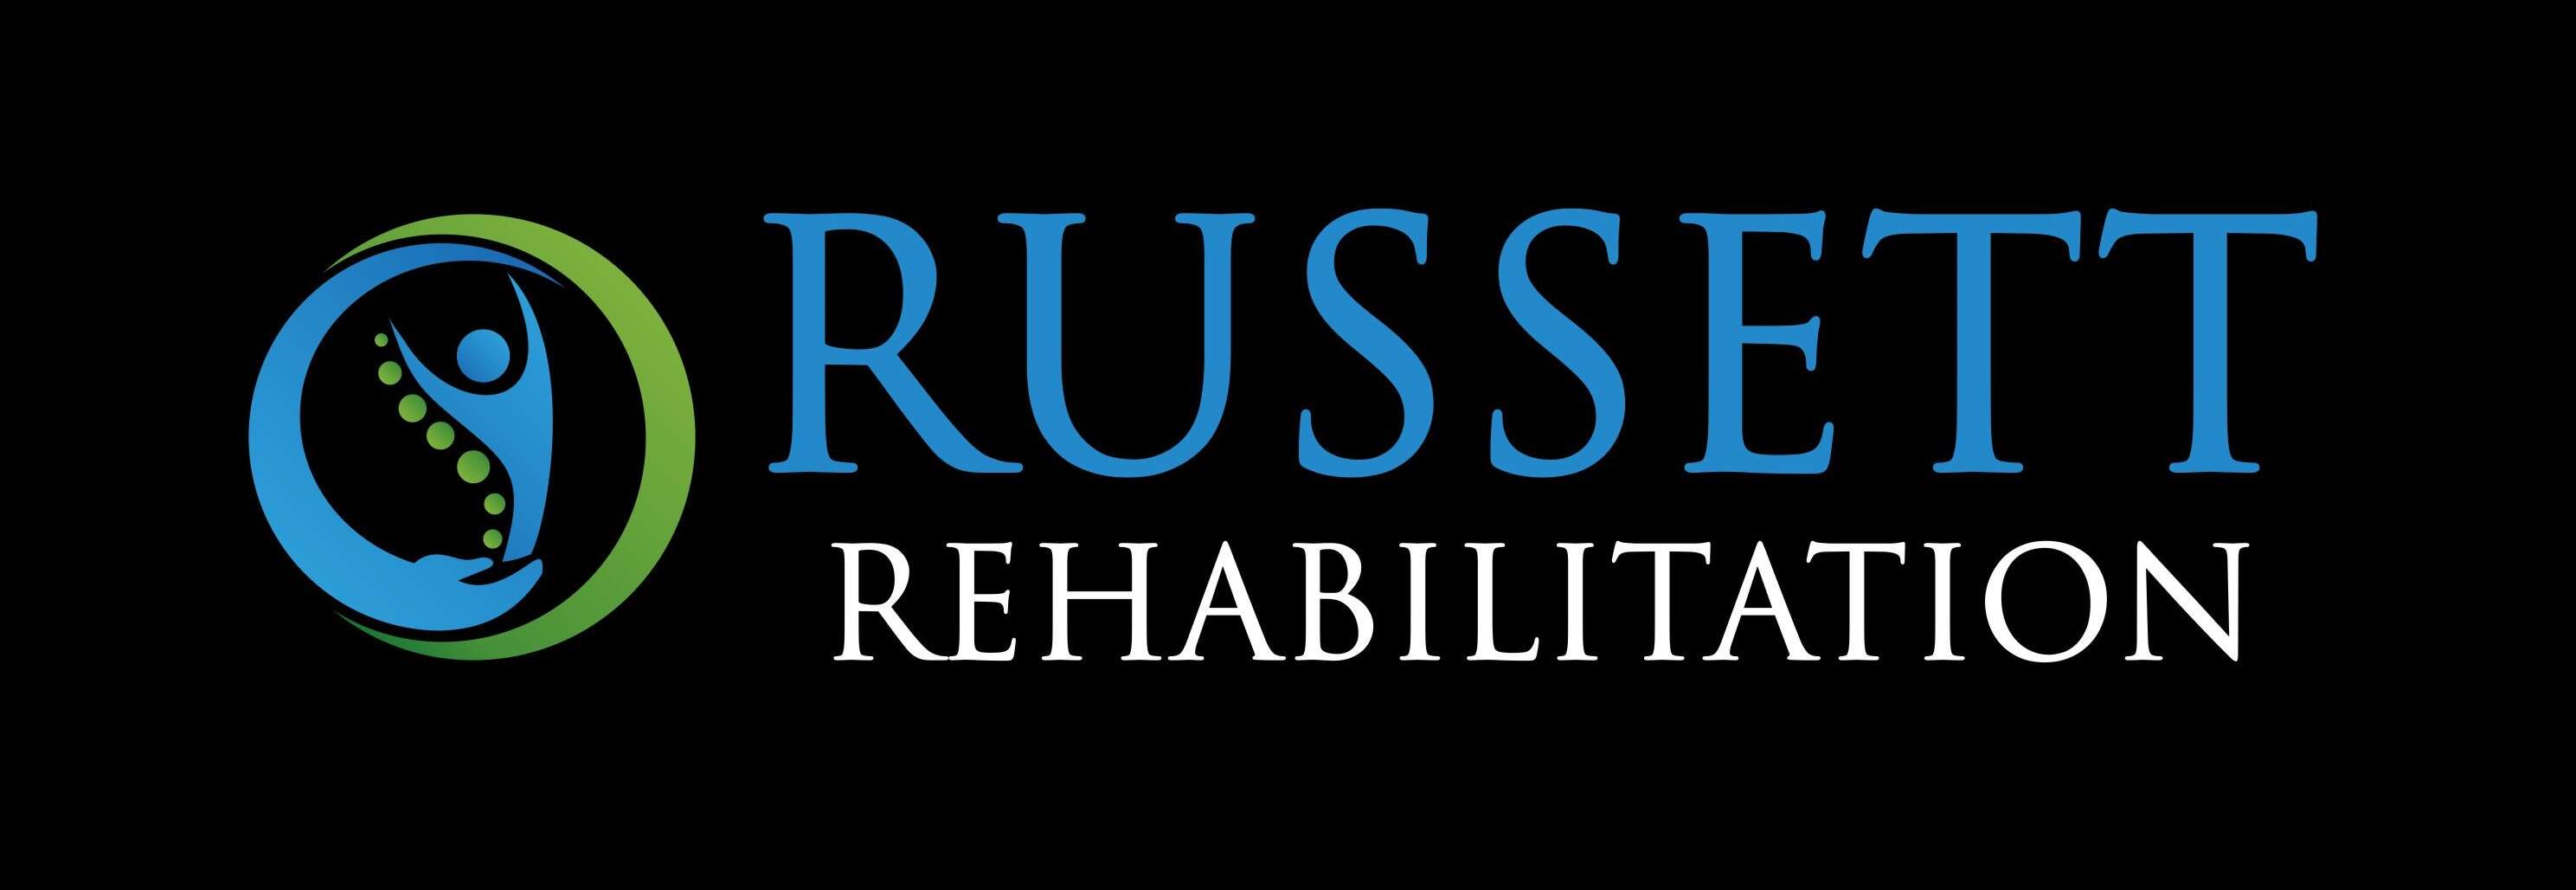 Russett Rehabilitation